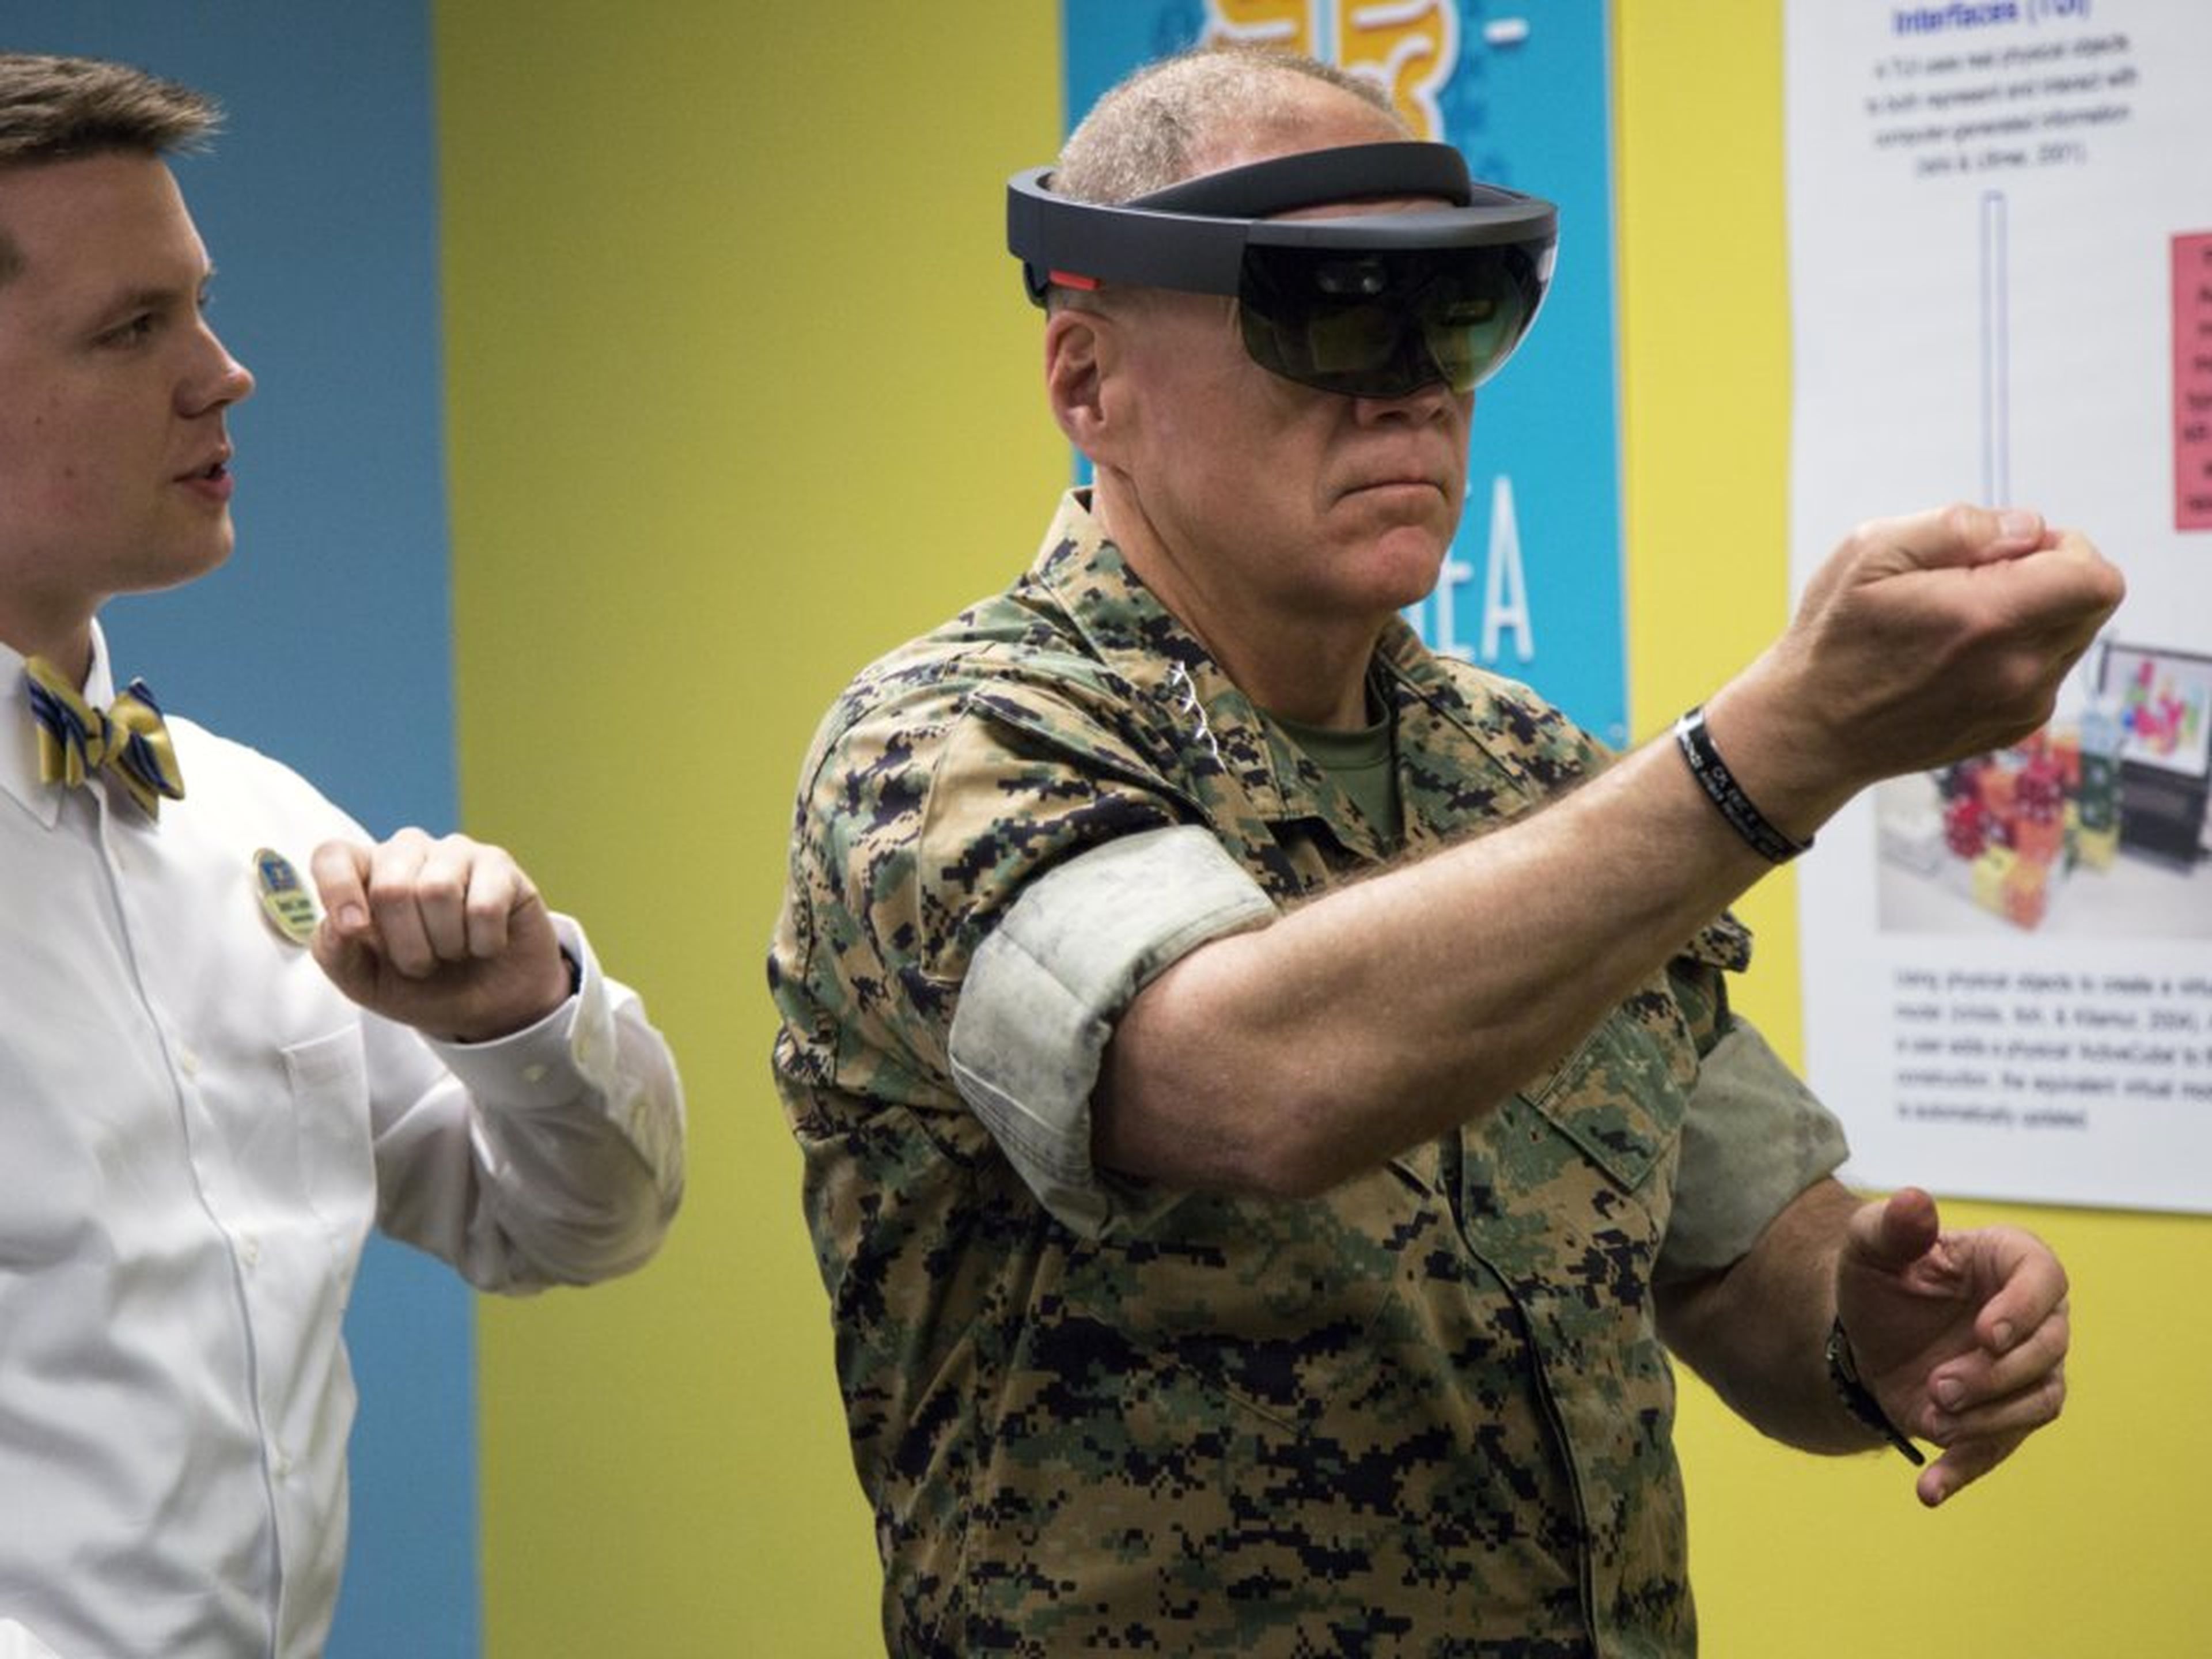 El ejército está probando gafas que emplean reconocimiento facial, así como tecnología que traduce palabras escritas como señales de tráfico.